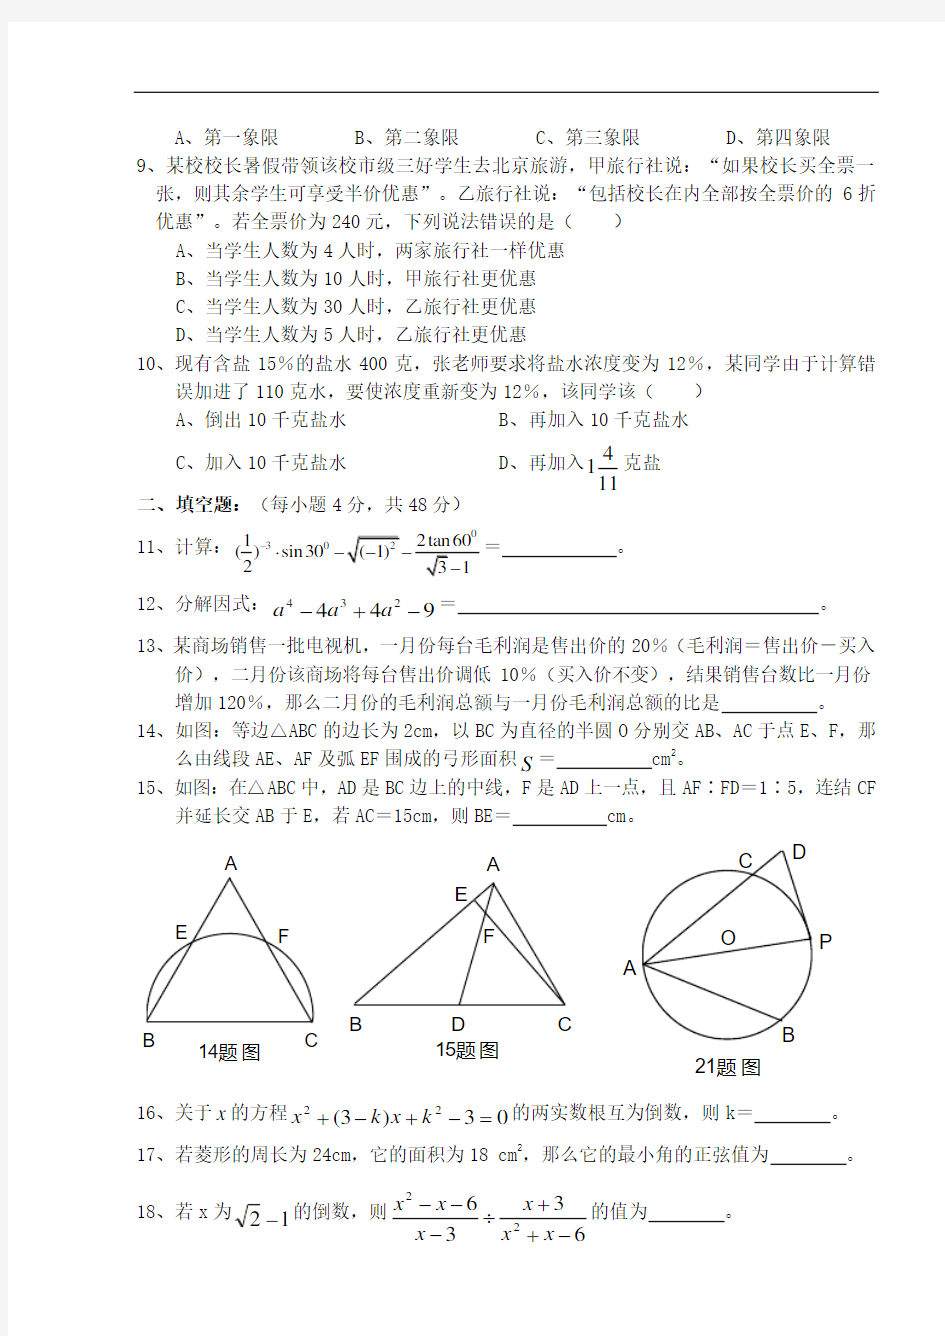 2004年重庆市中考数学模拟试卷及解答-